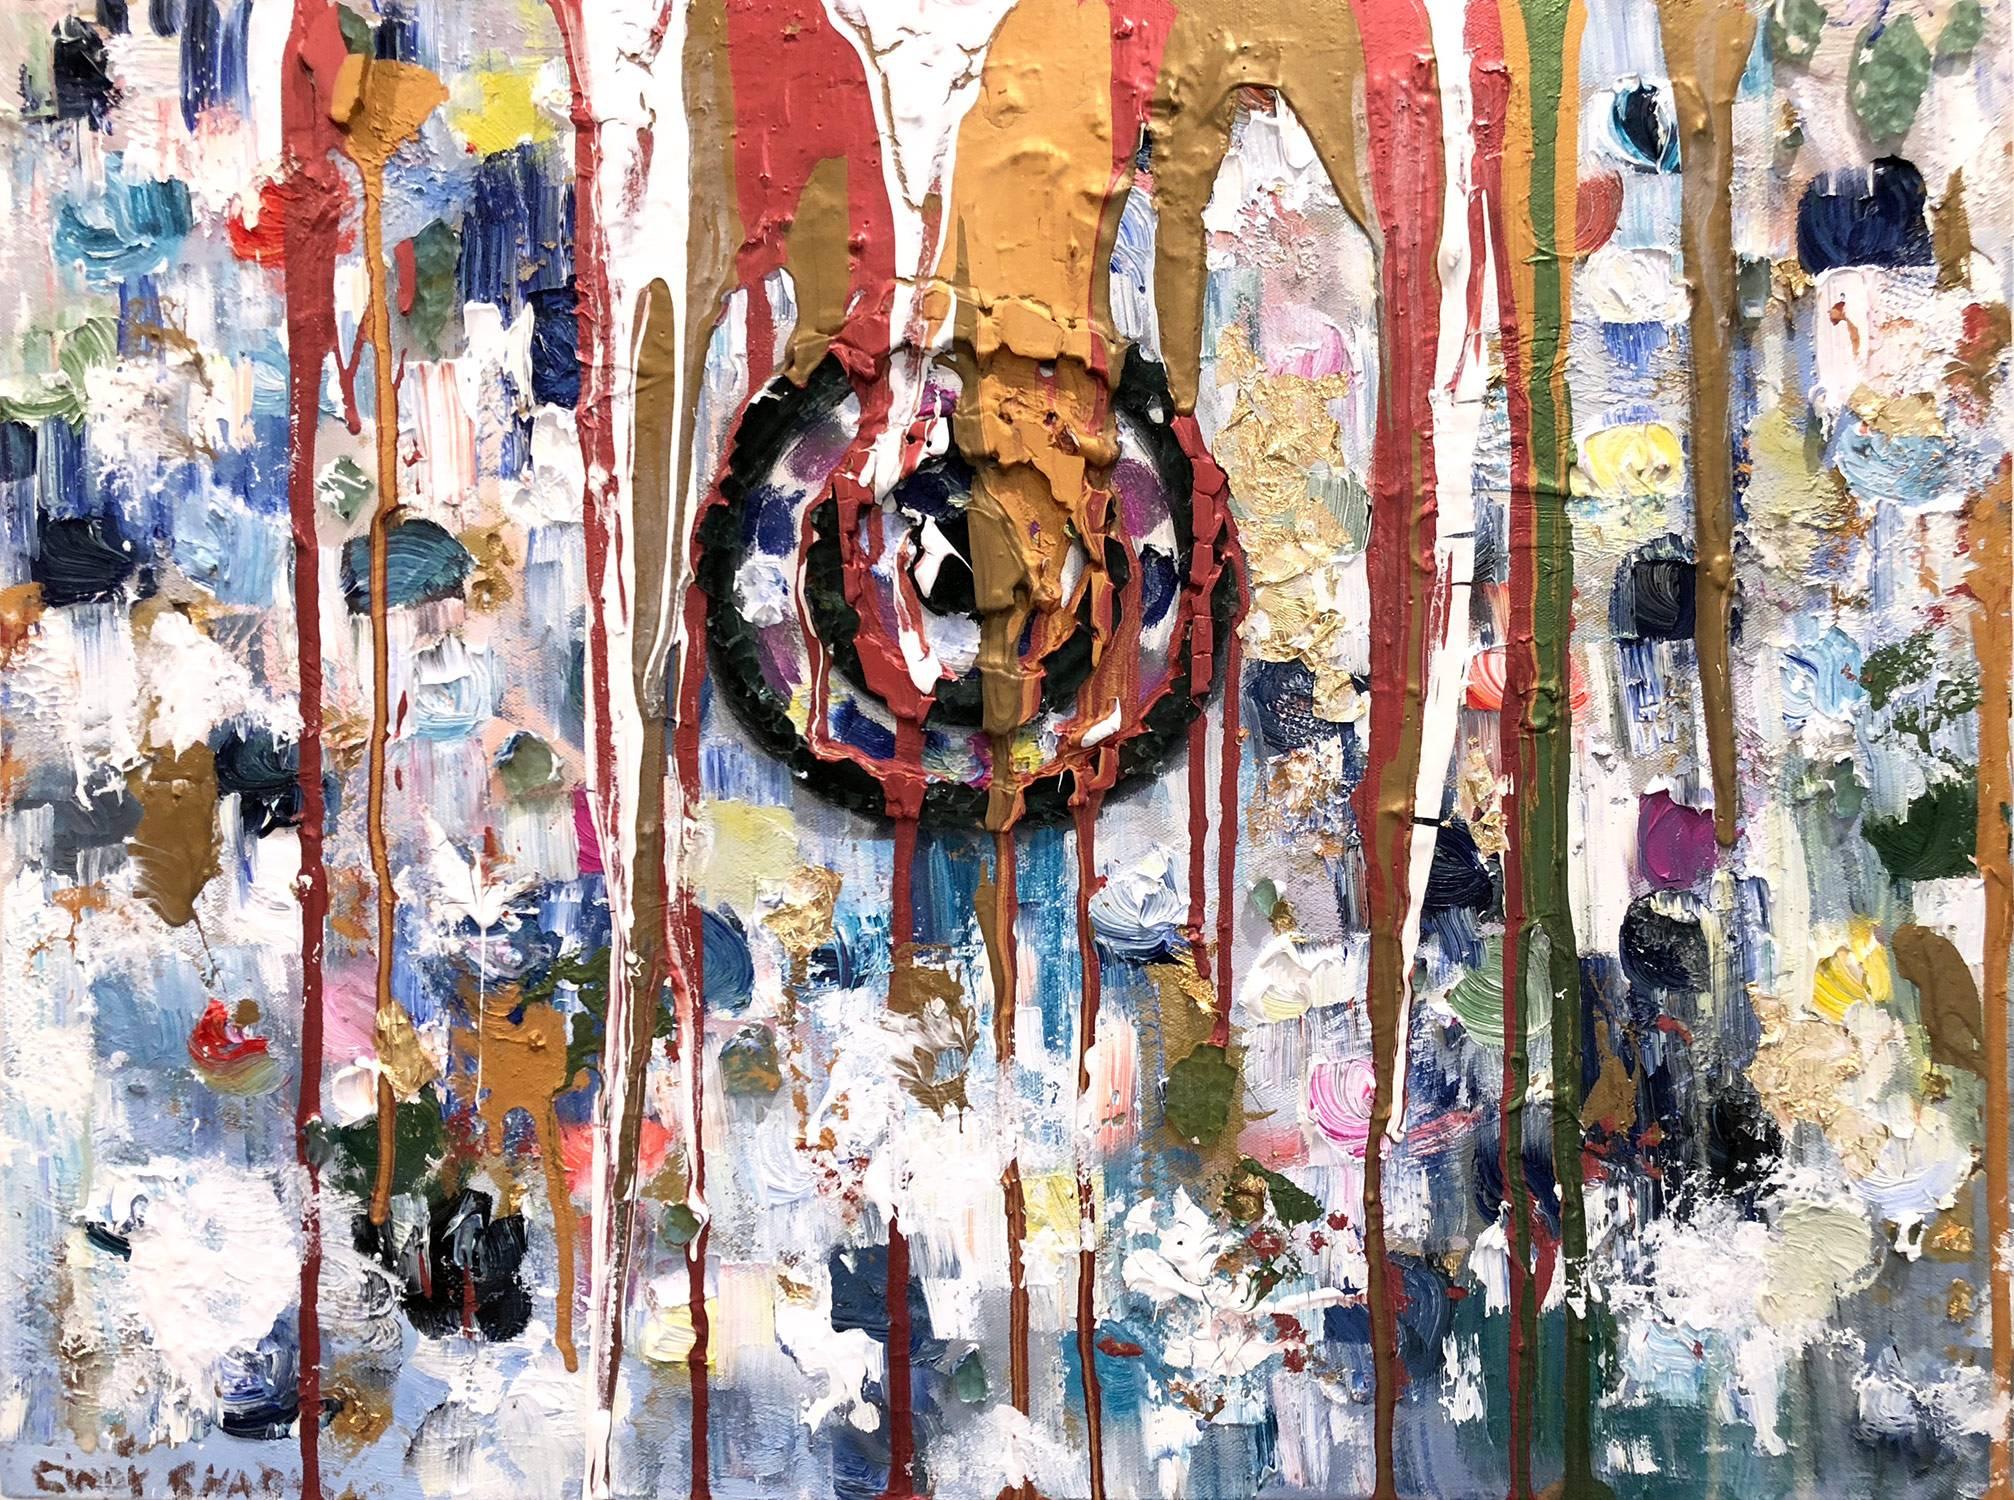 Abstract Painting Cindy Shaoul - "Aiming For Your Heart" Peinture à l'huile contemporaine colorée et mixed media sur toile